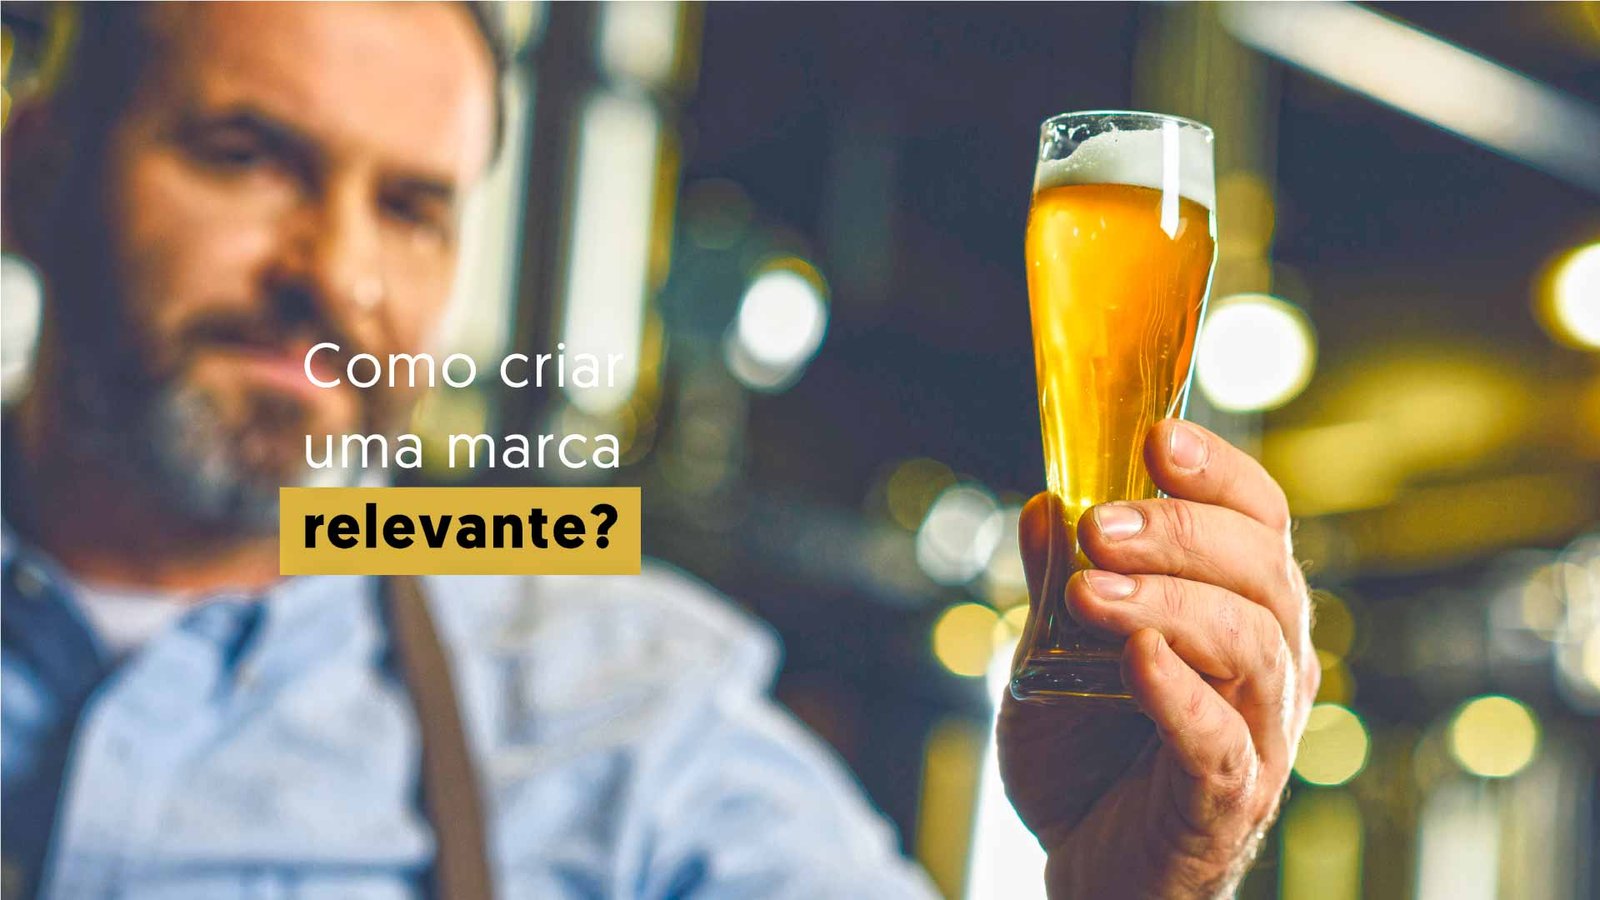 homem segurando copo de cerveja e texto escrito: como criar uma marca relevante?